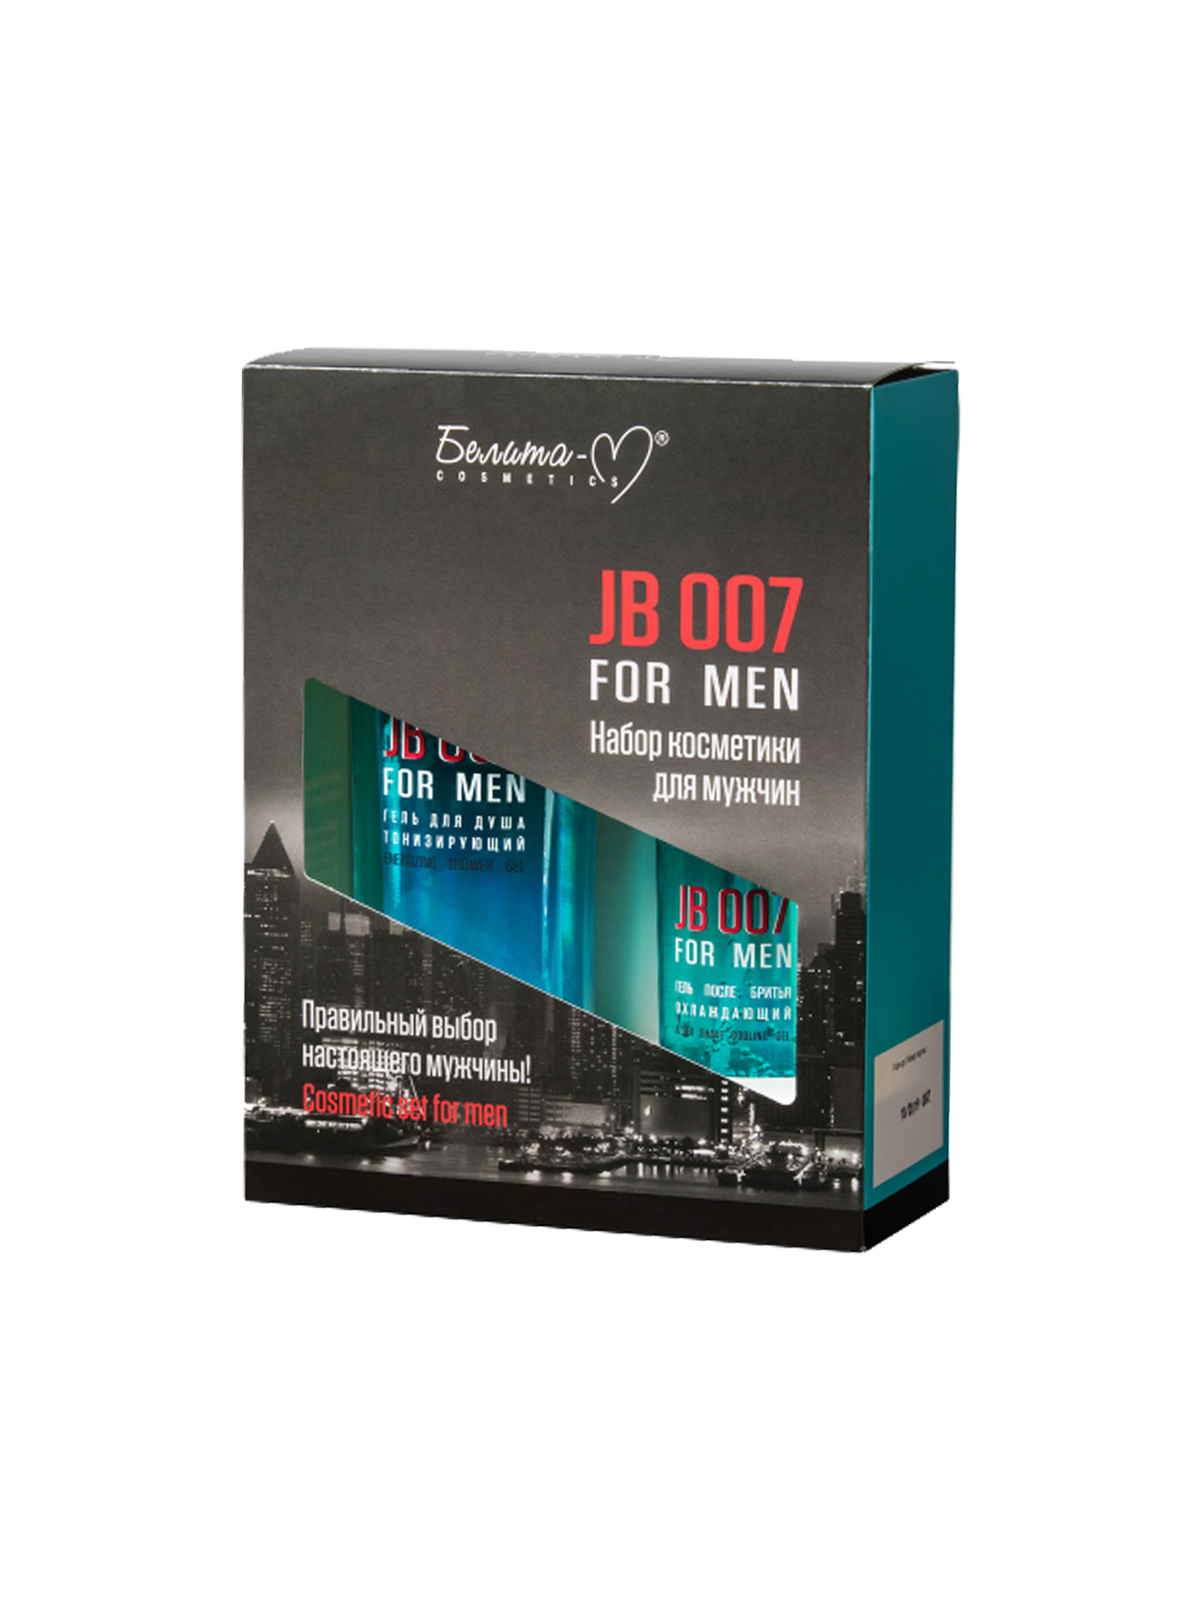 Набор косметики для мужчин  JB 007: Гель для душа 250г, Гель после бритья  75г